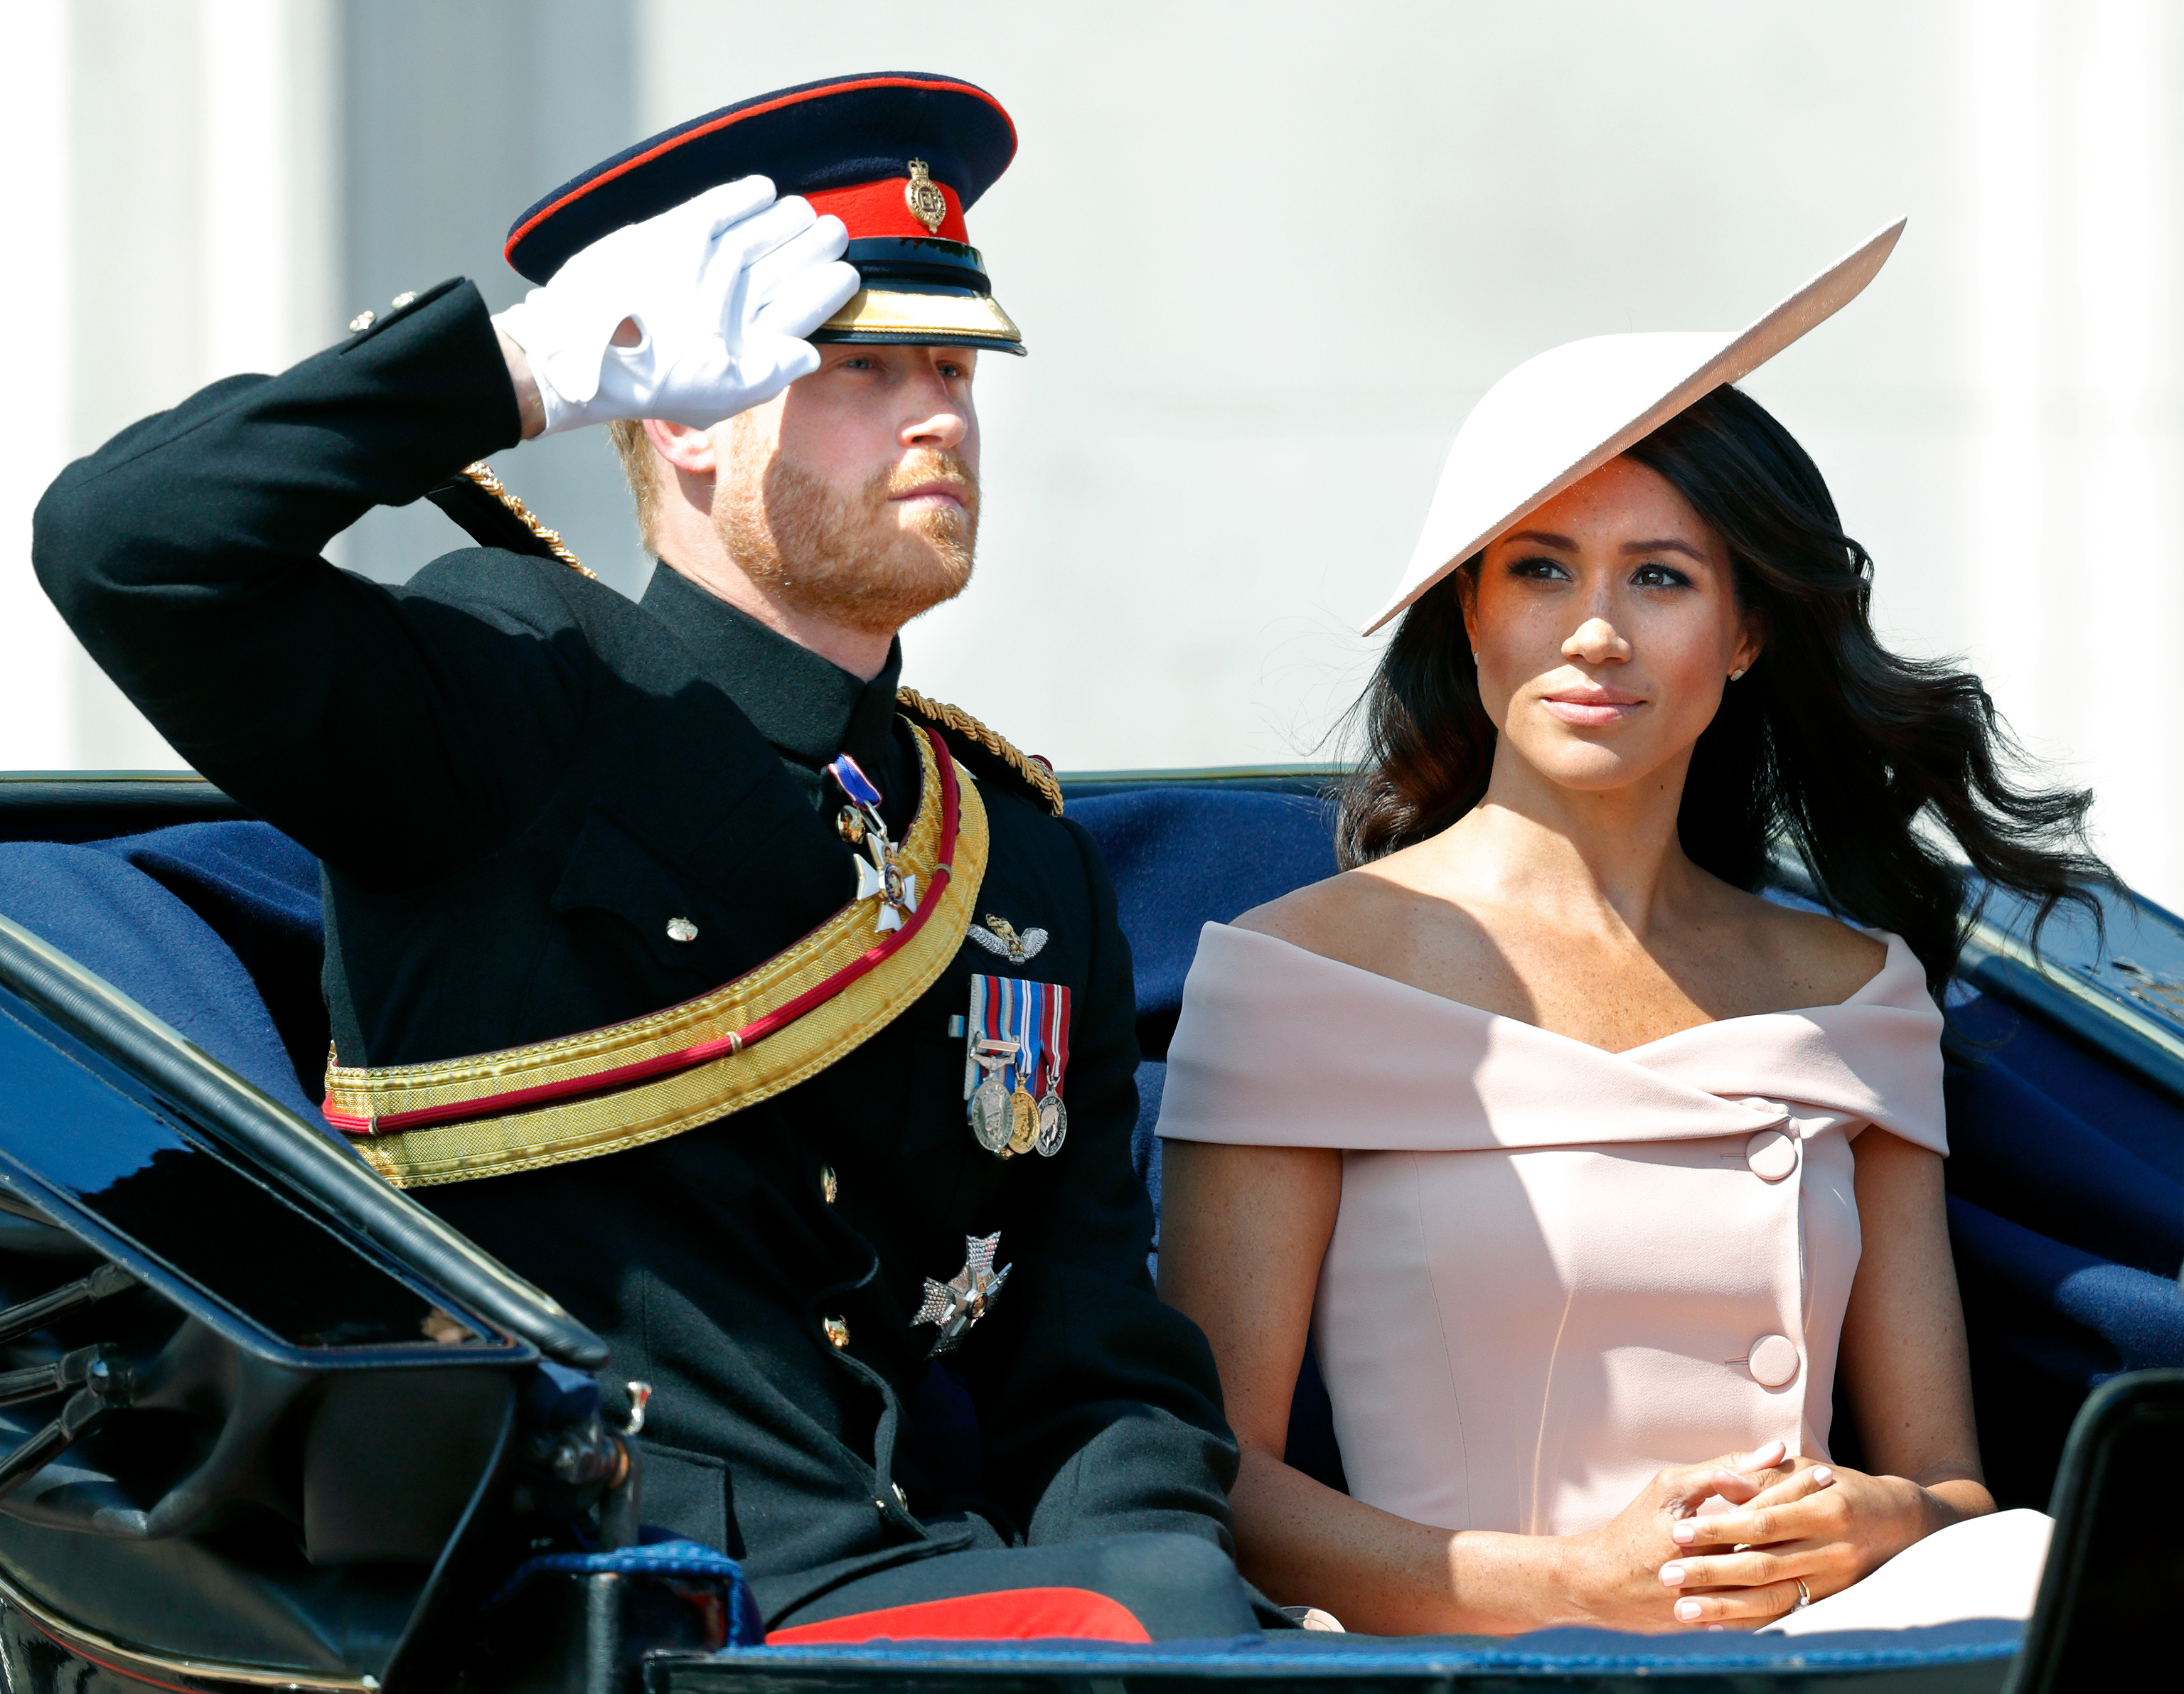 El duque en 2018 vistiendo prendas militares y saludando a la multitud mientras su esposa Meg se sienta a su lado.